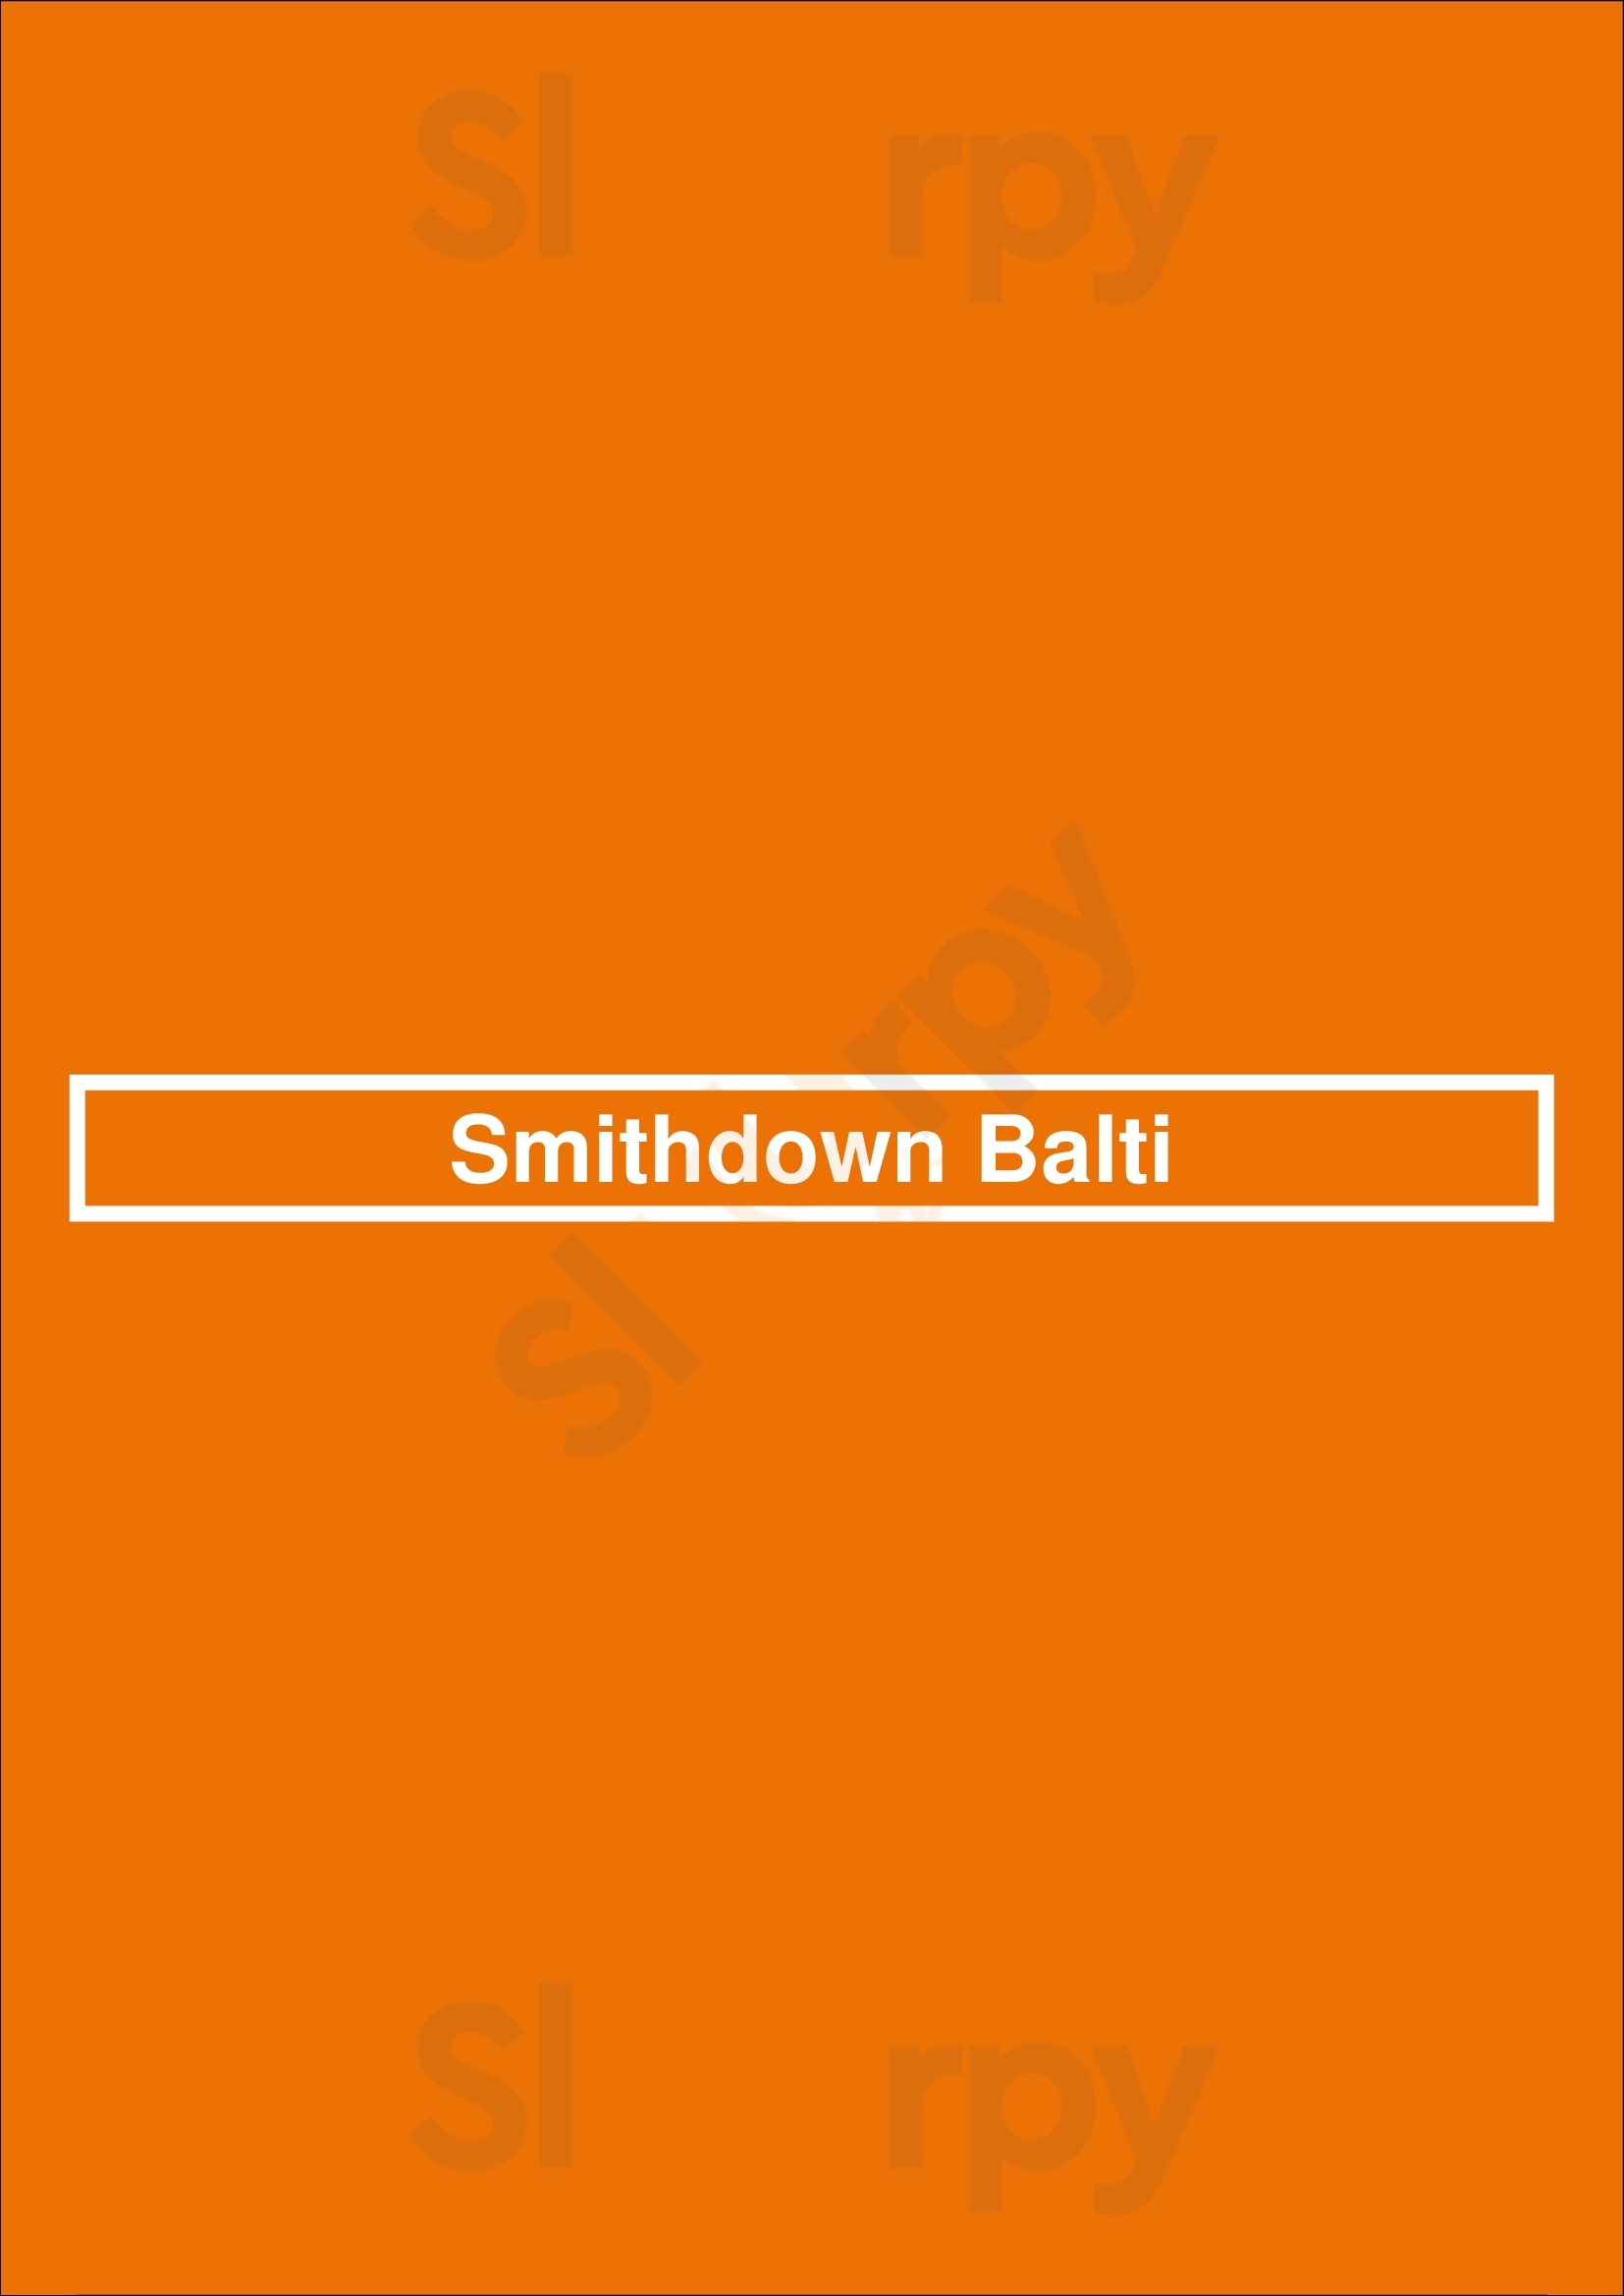 Smithdown Balti Liverpool Menu - 1